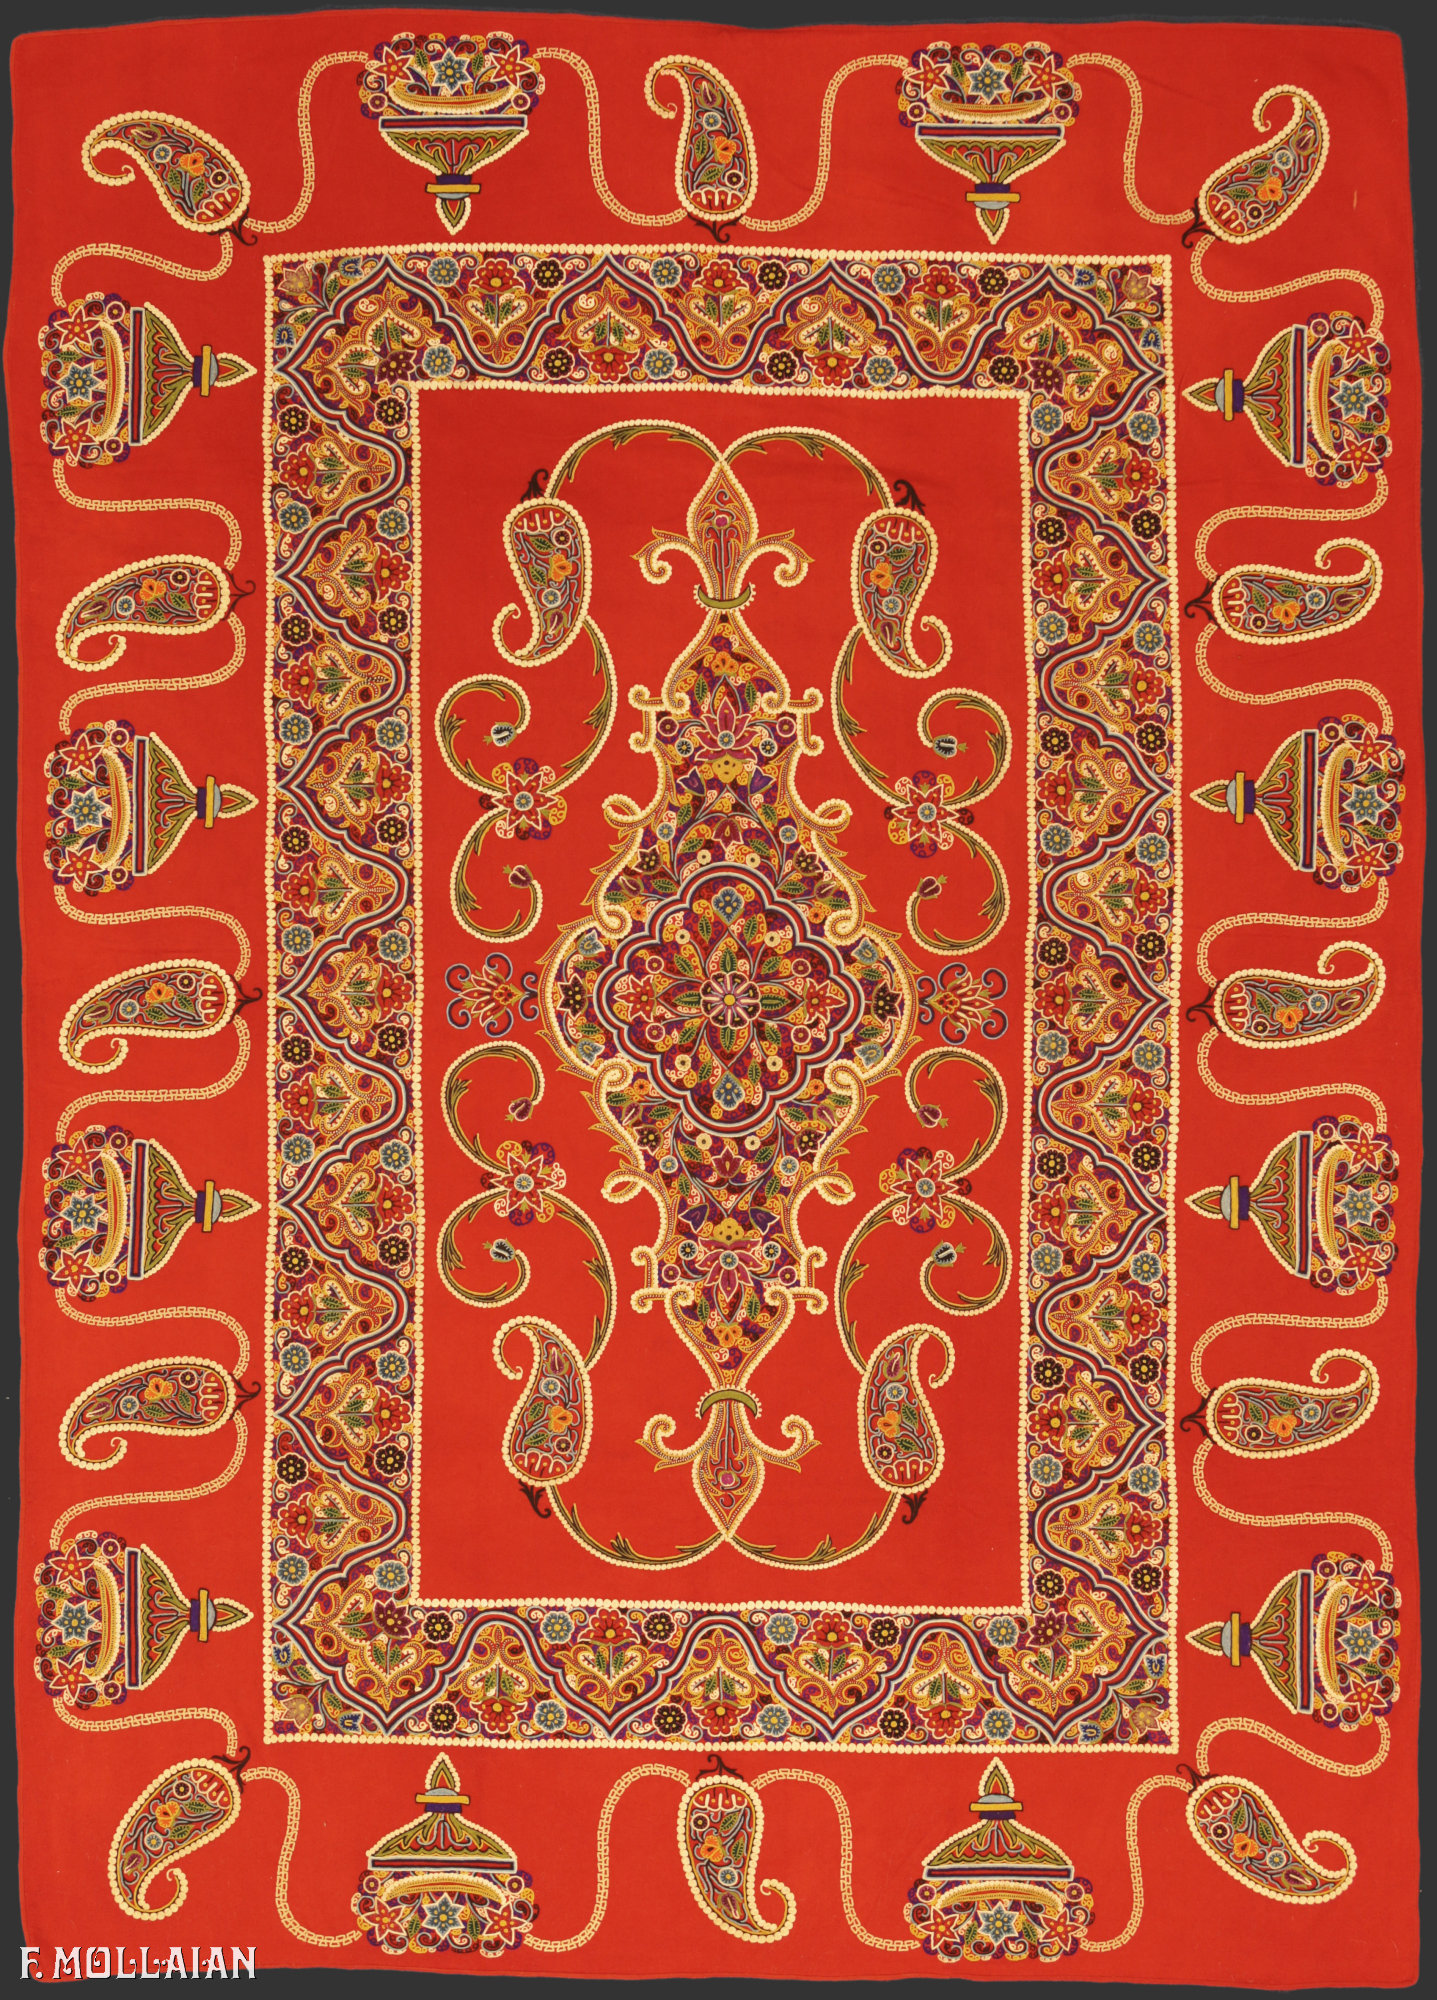 Textil Persa Antiguo Rashti-Duzi n°:52322737